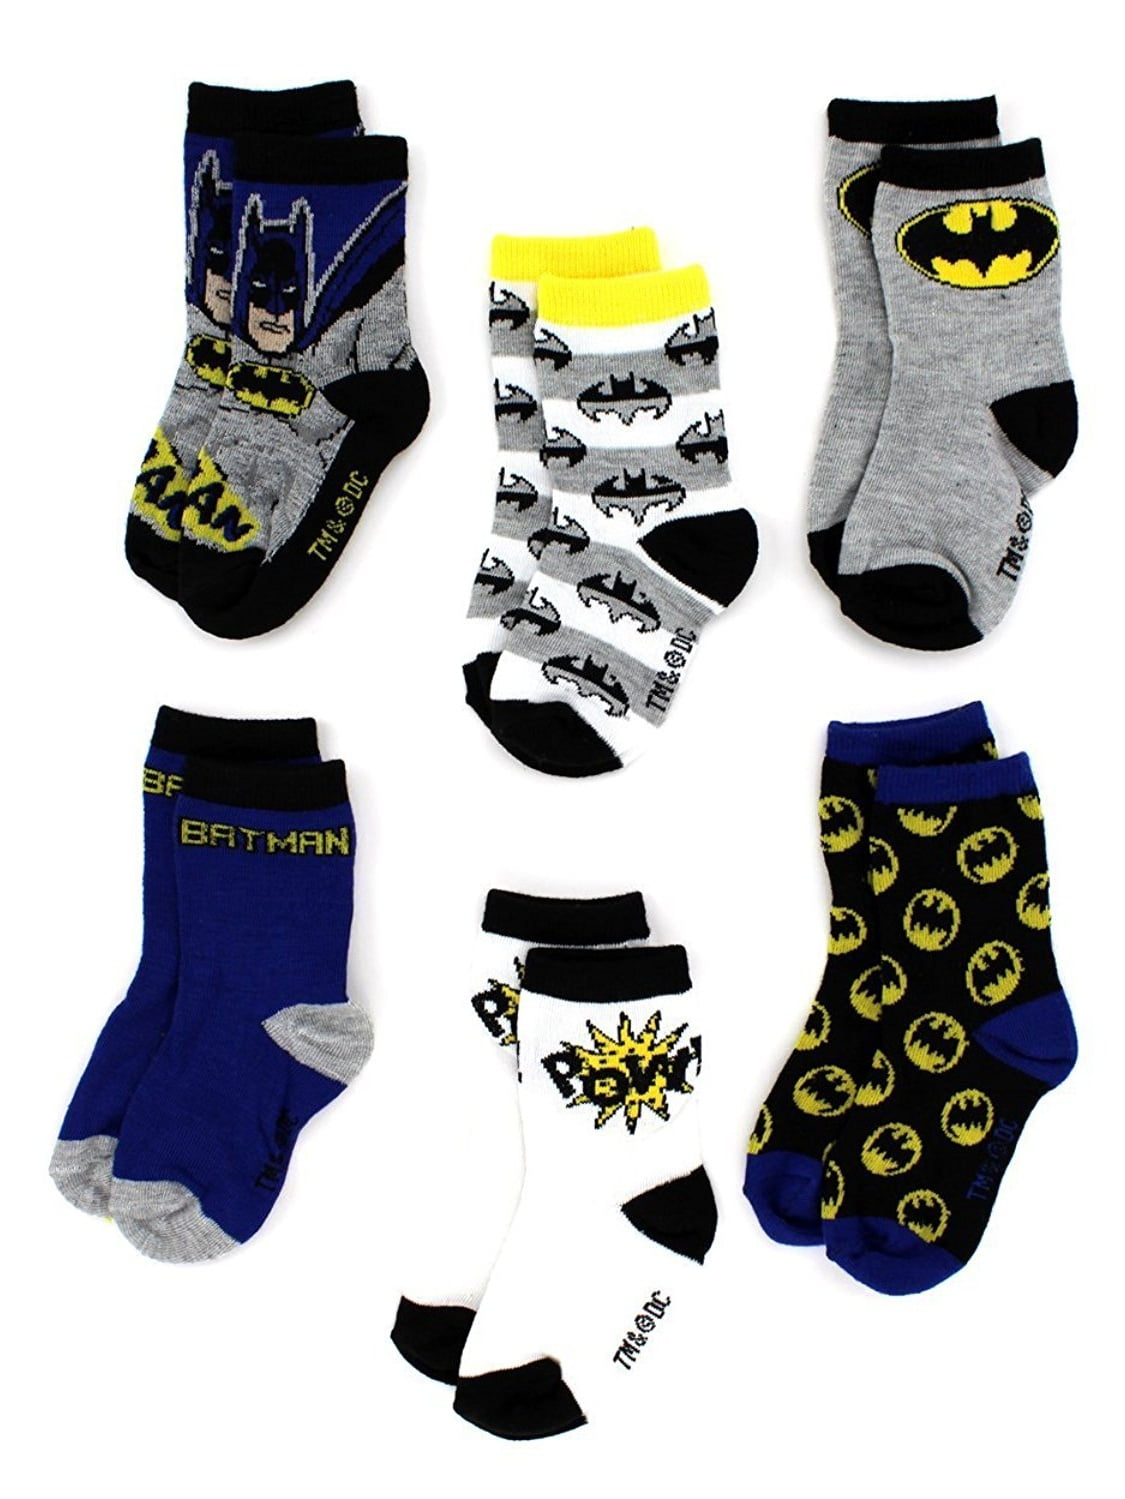 DC Batman Boys 6 Pack Crew Socks Baby/Toddler/Little Kid Infant 2T~5T NEW 